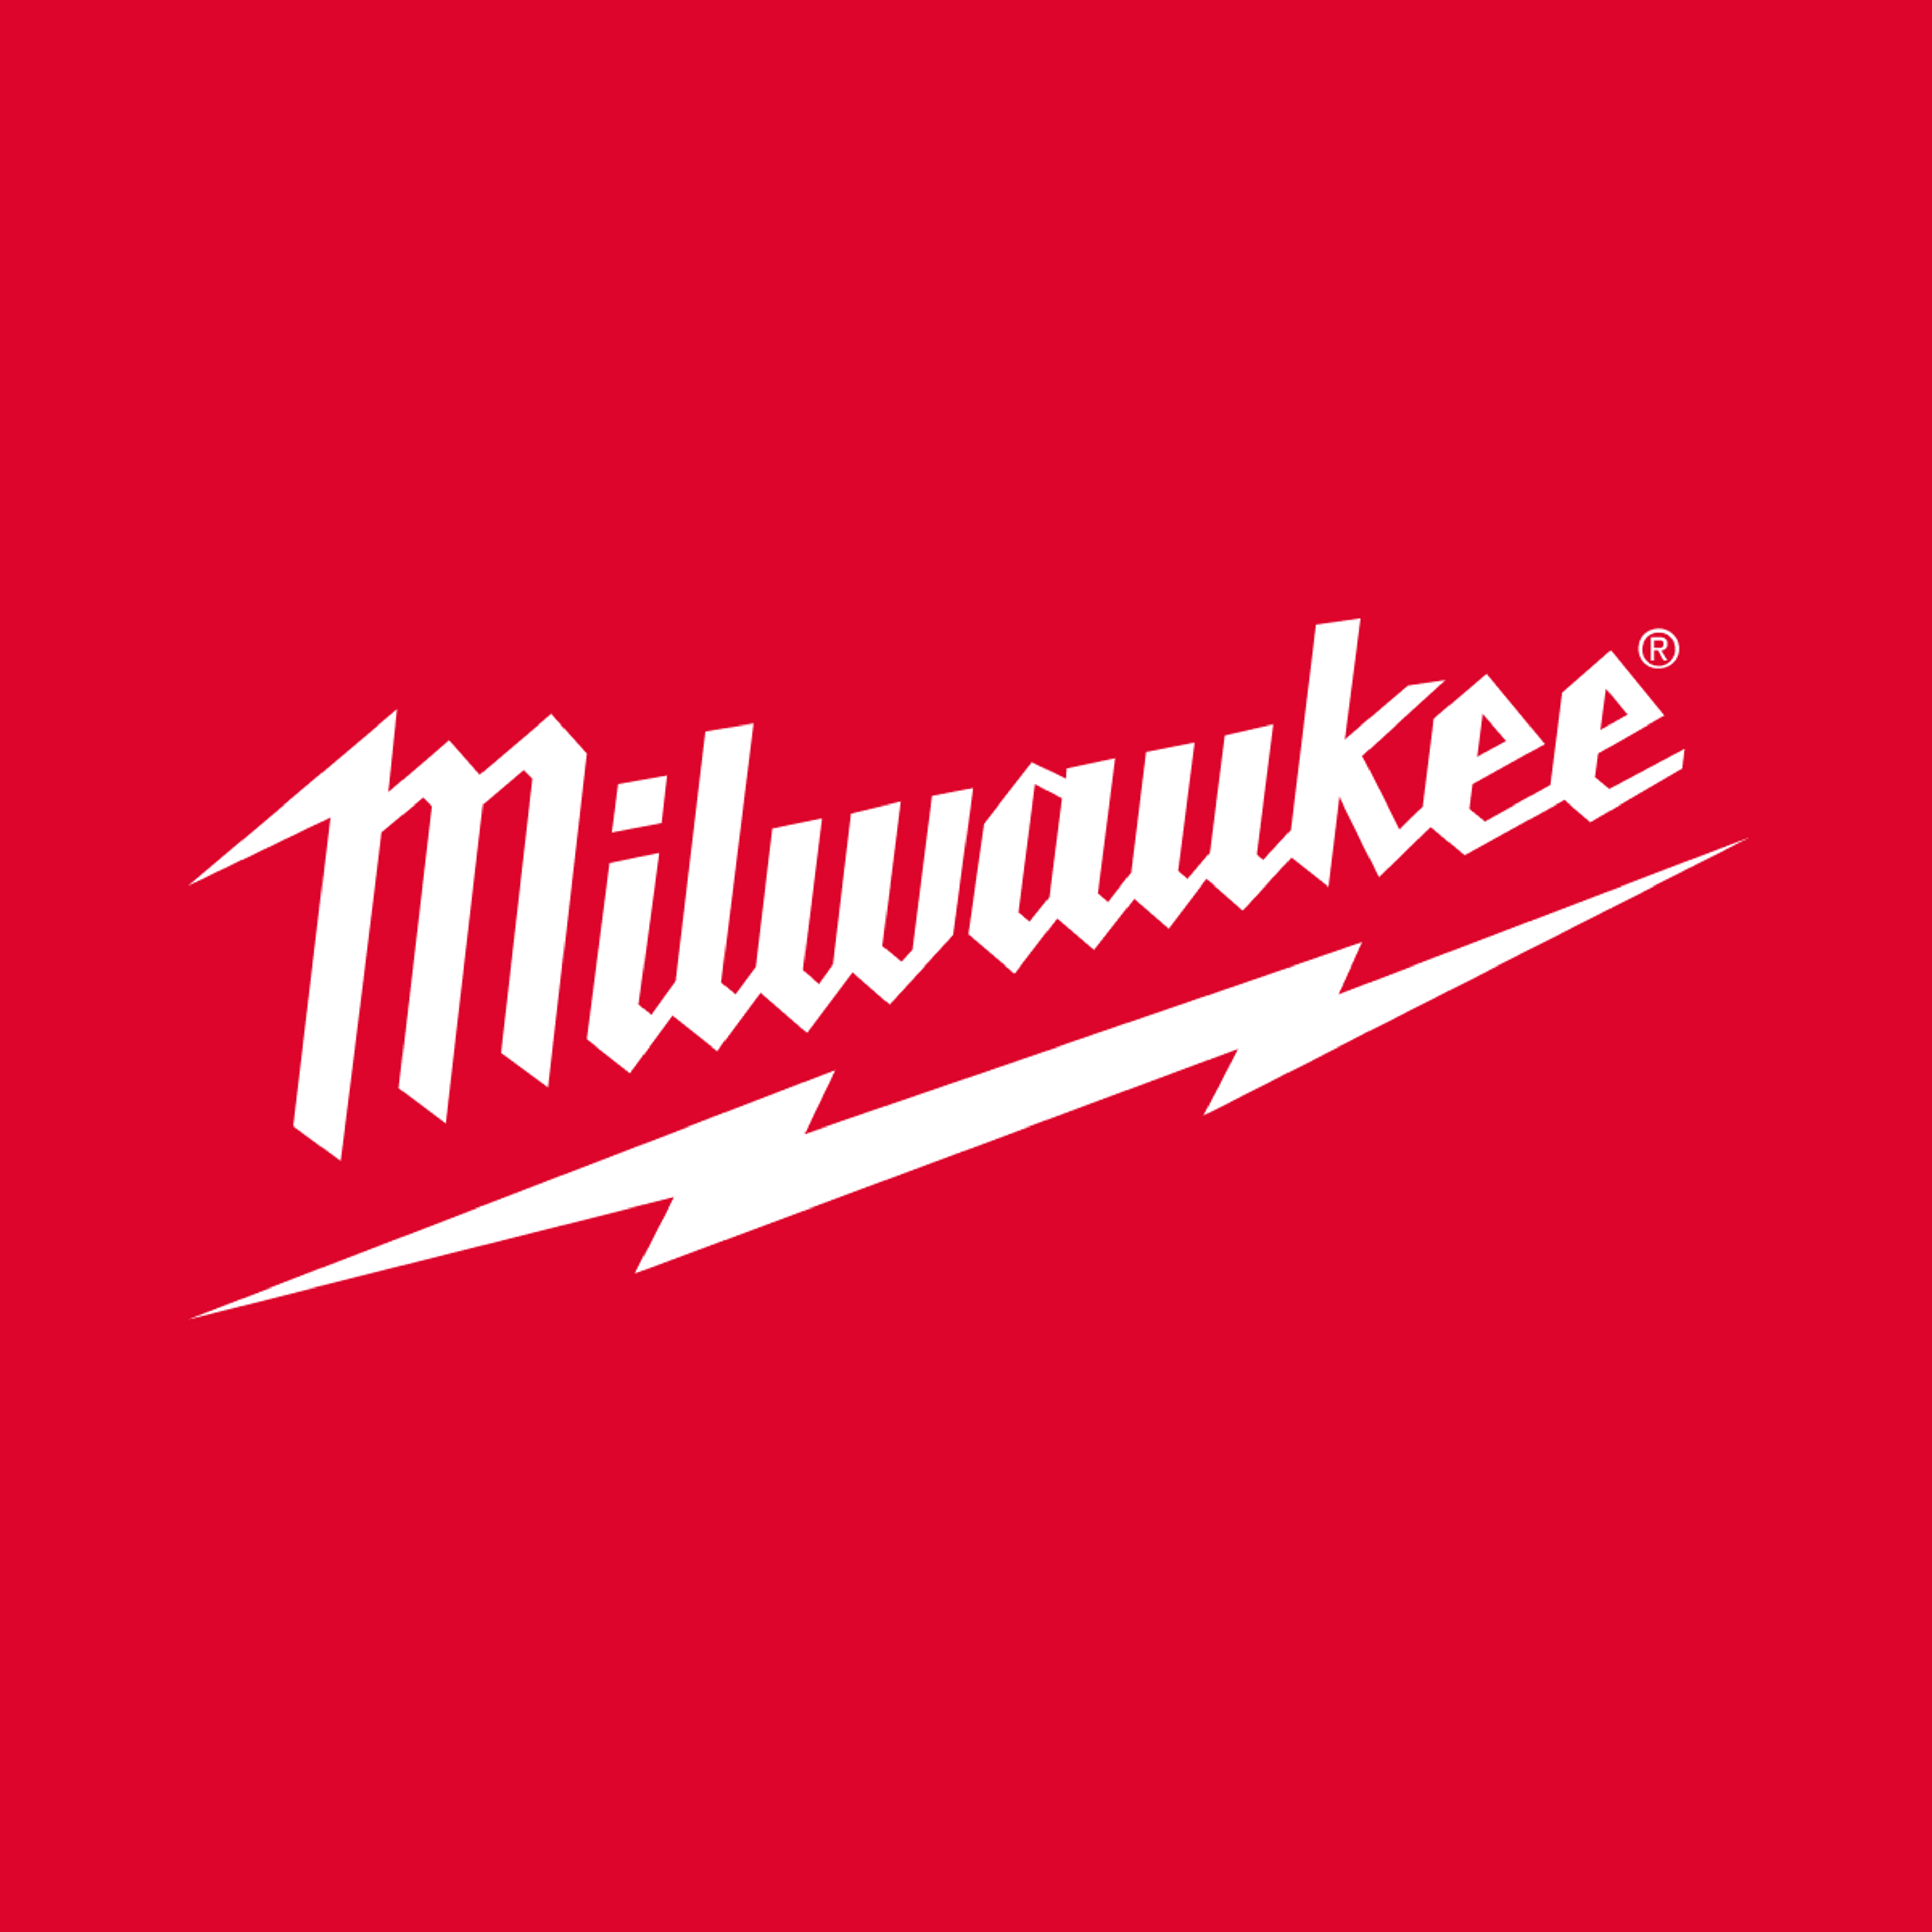 Milwaukee Tool logo